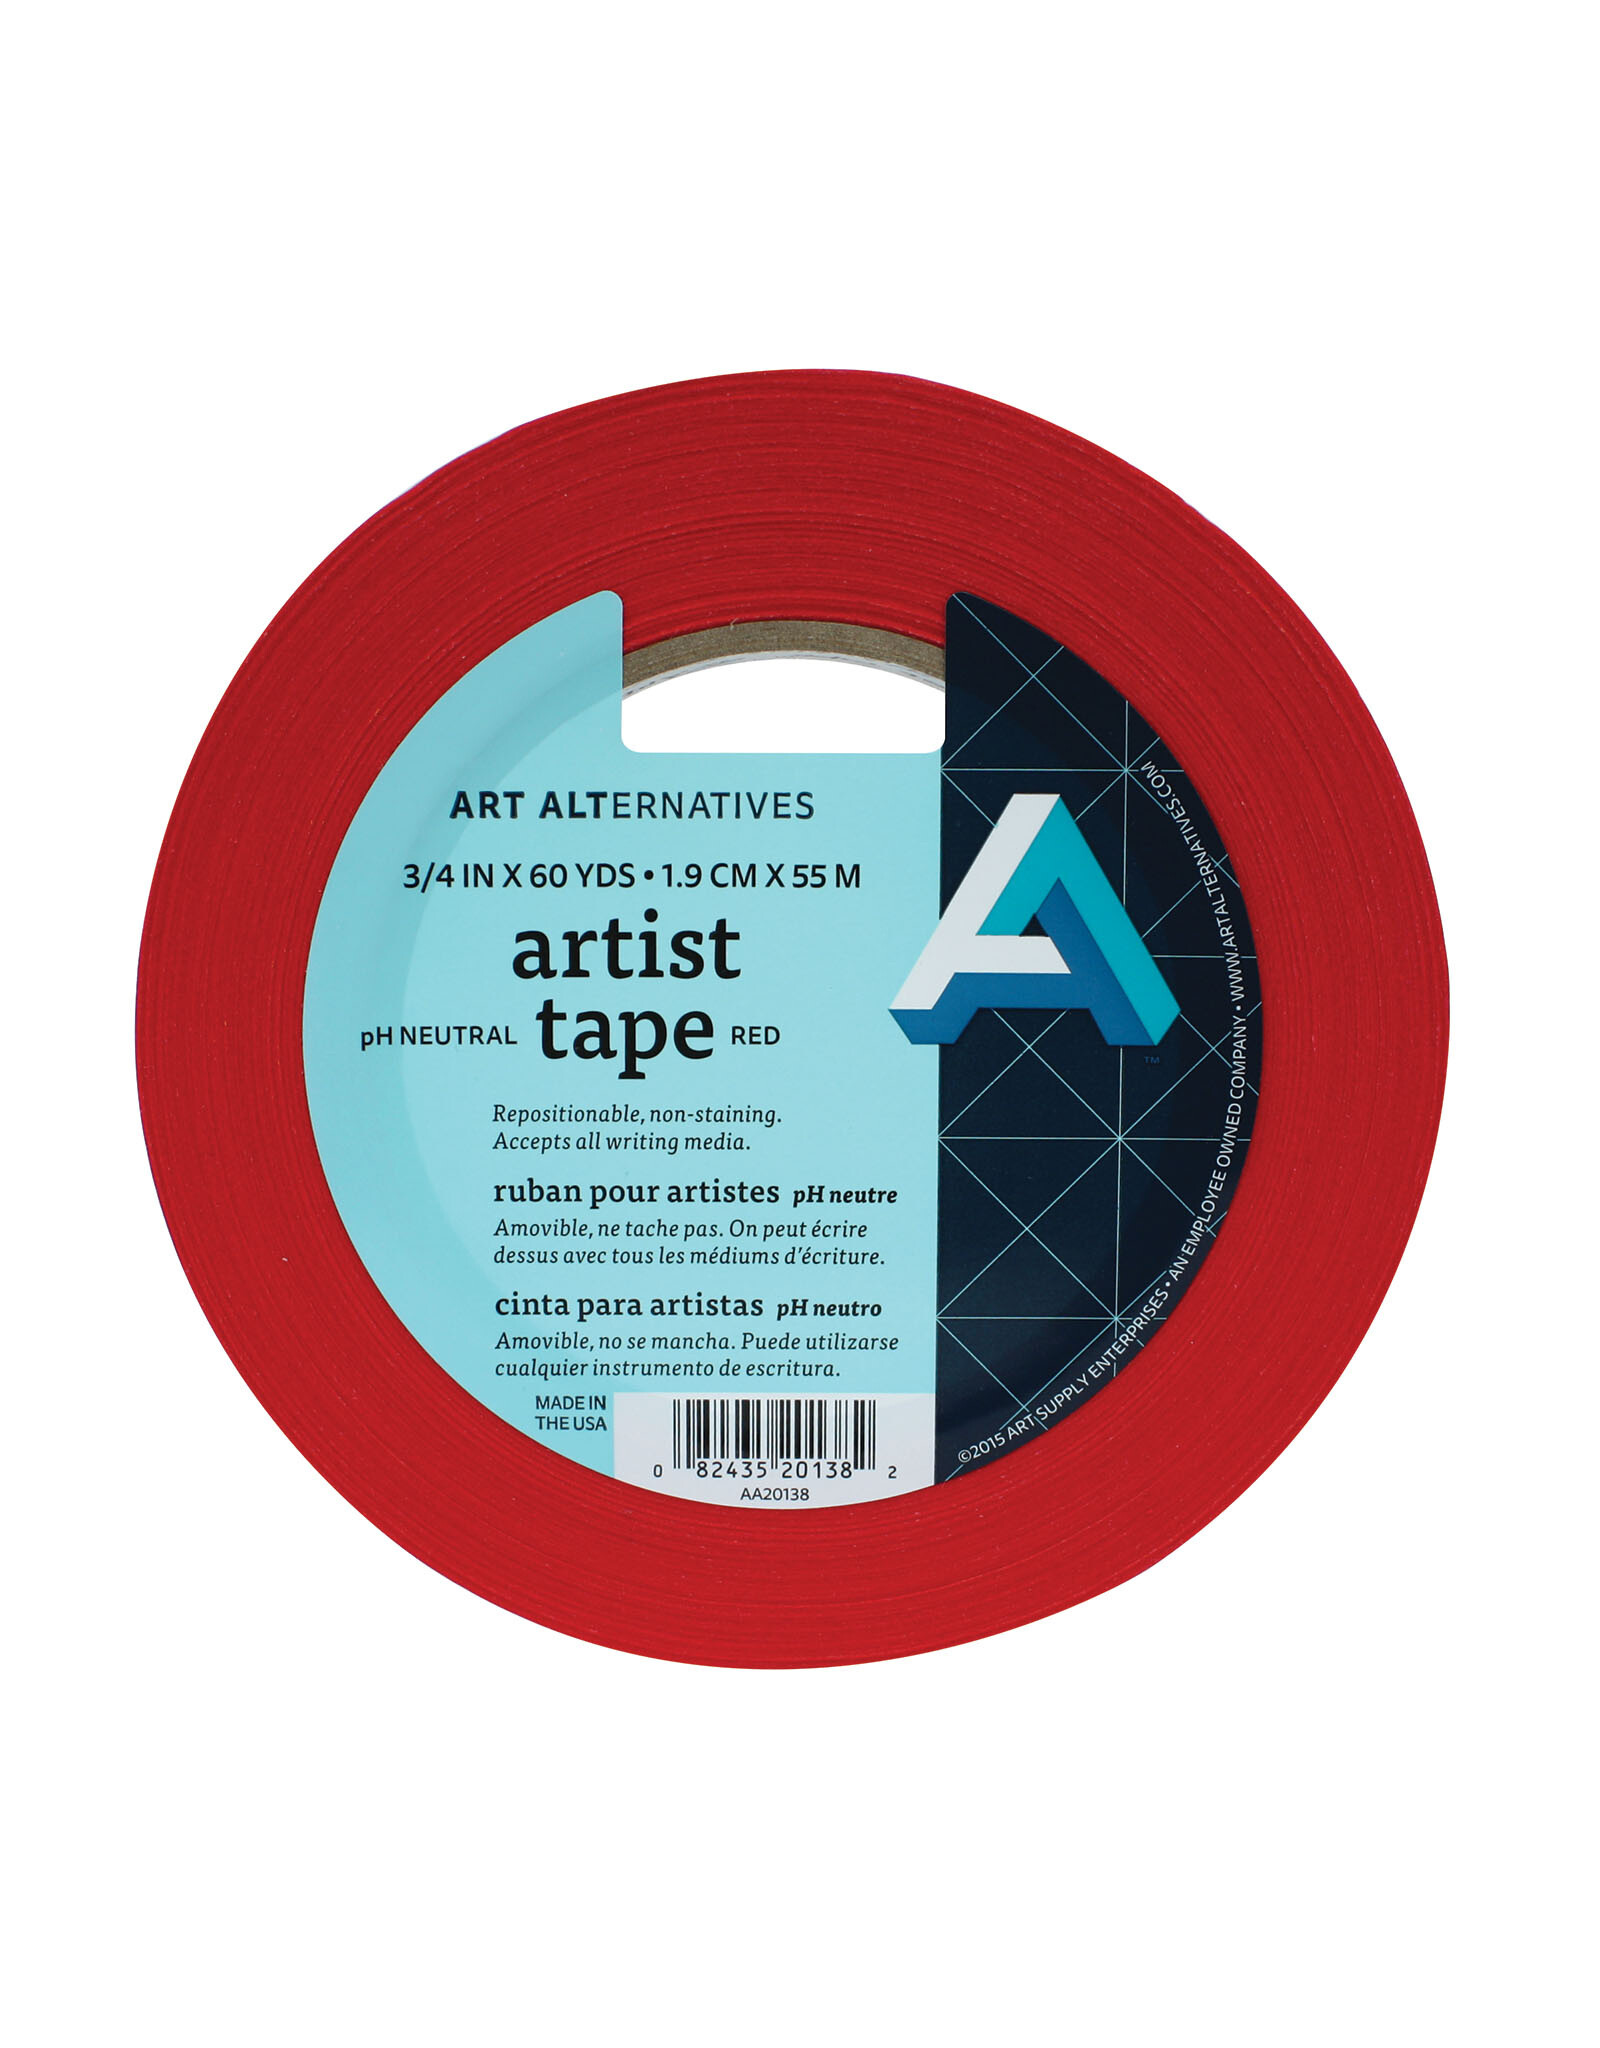 Art Alternatives Art Alternatives Artist Tape Red ¾'' x 60yds